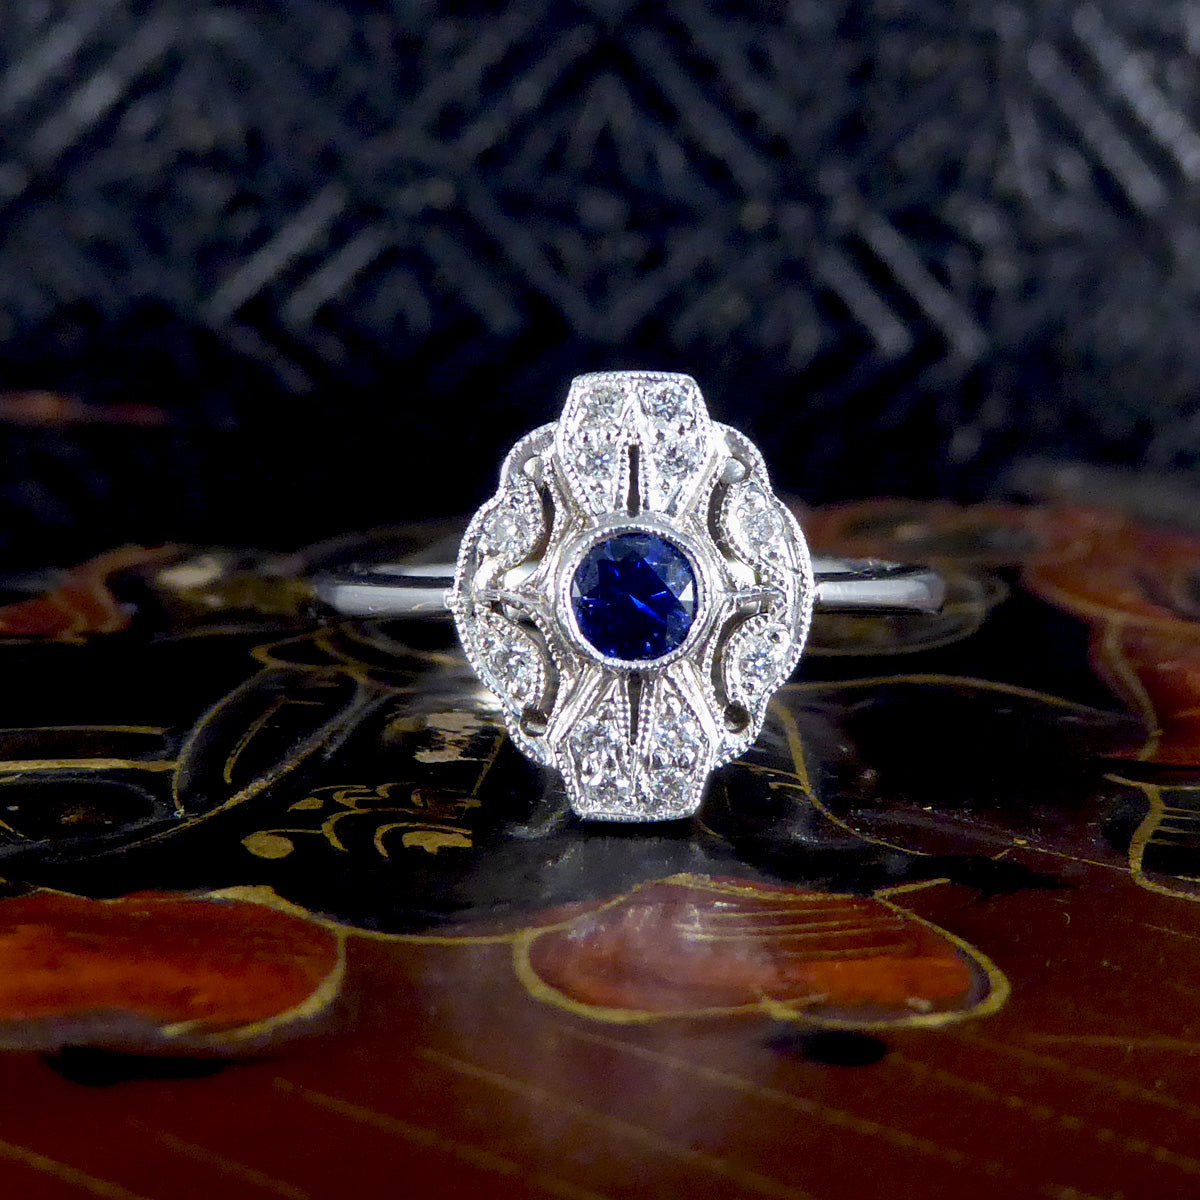 Premium Period Art Deco Replica Sapphire and Diamond Plaque Ring in 18ct White Gold